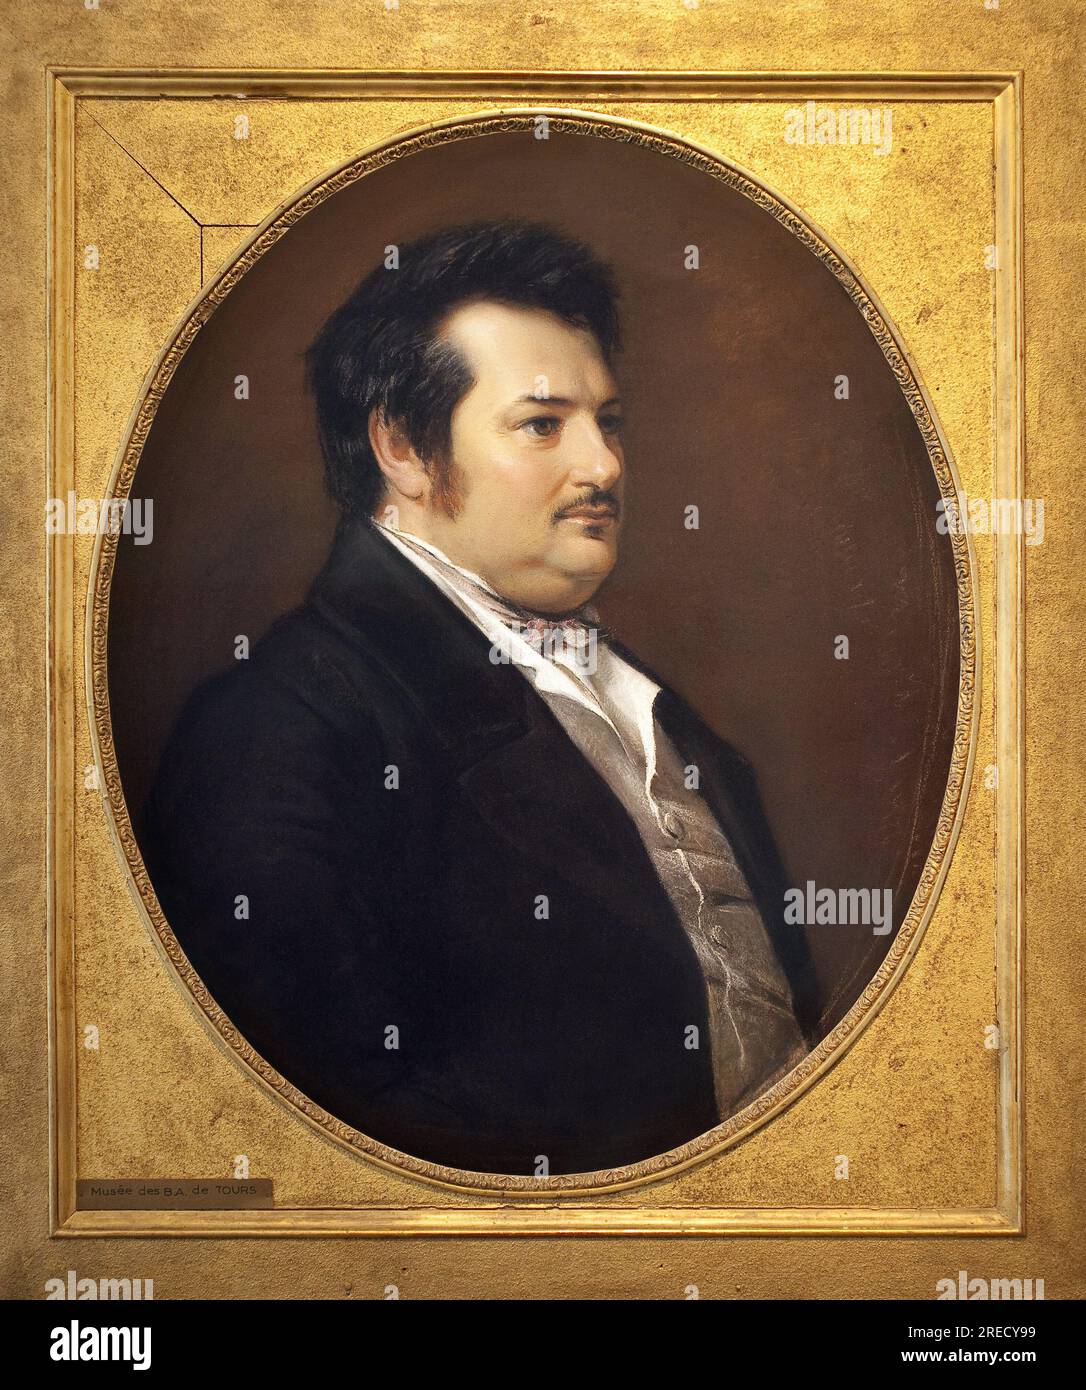 Portrait de Balzac jeune (Honore de Balzac, 1799-1850). Oeuvre de Jean Alfred Gerard Seguin (1805-1875), pastel, 1843, art francais. Musee des Beaux Arts de Tours. Stock Photo